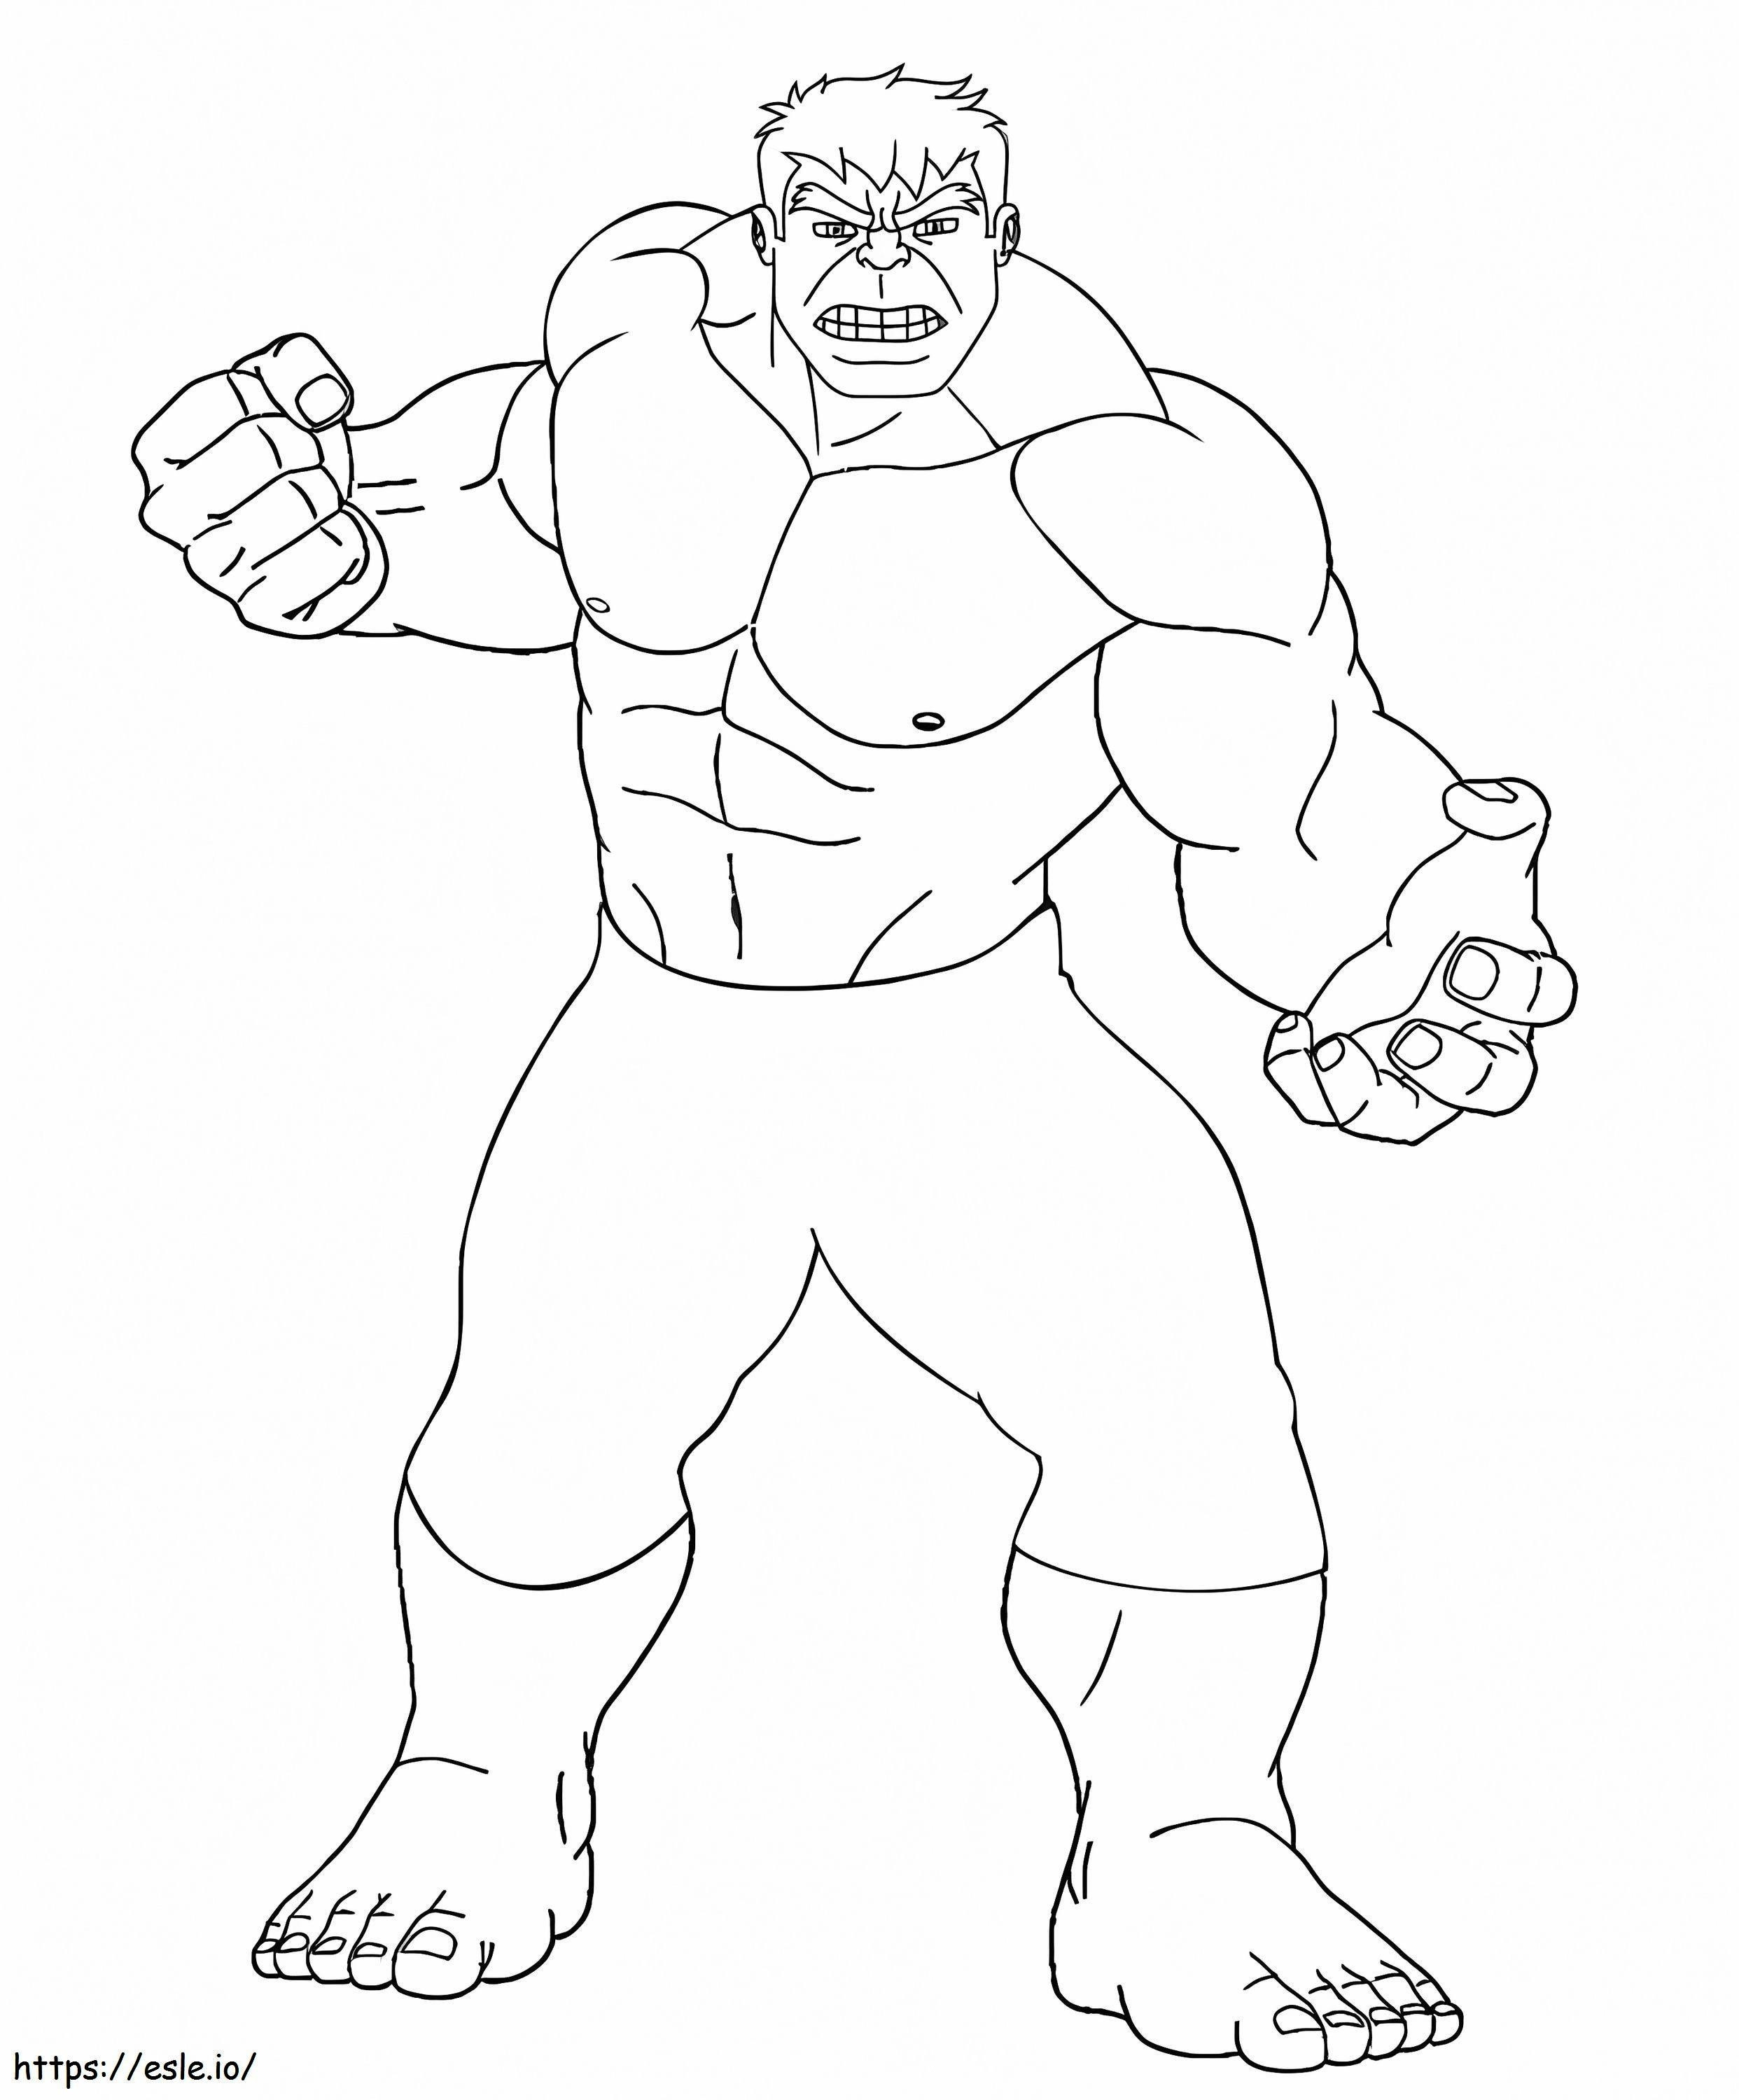 Temel Hulk boyama